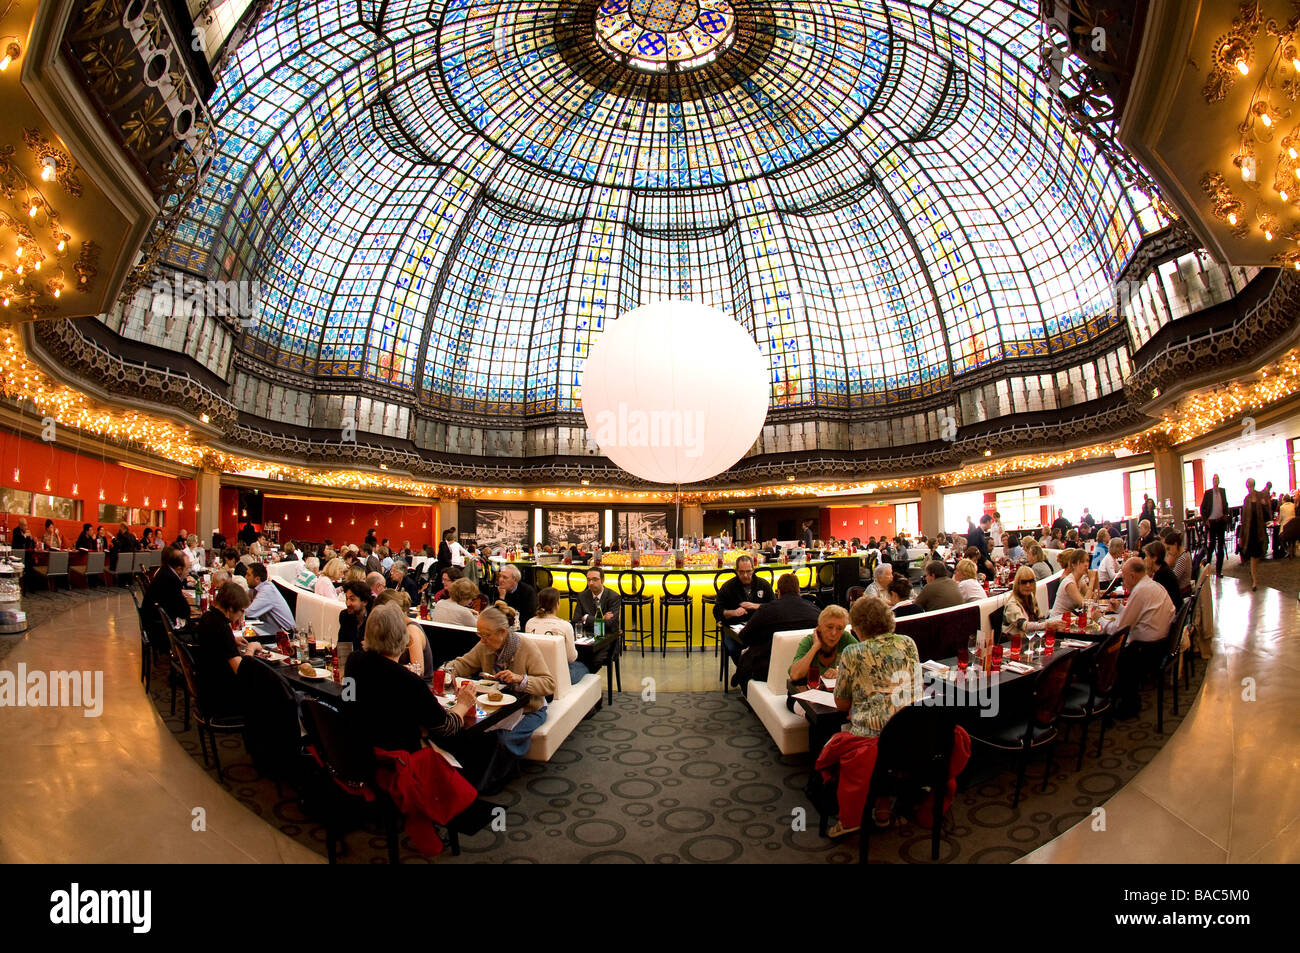 France, Paris, the restaurant of Le Printemps department store on Haussmann boulevard Stock Photo